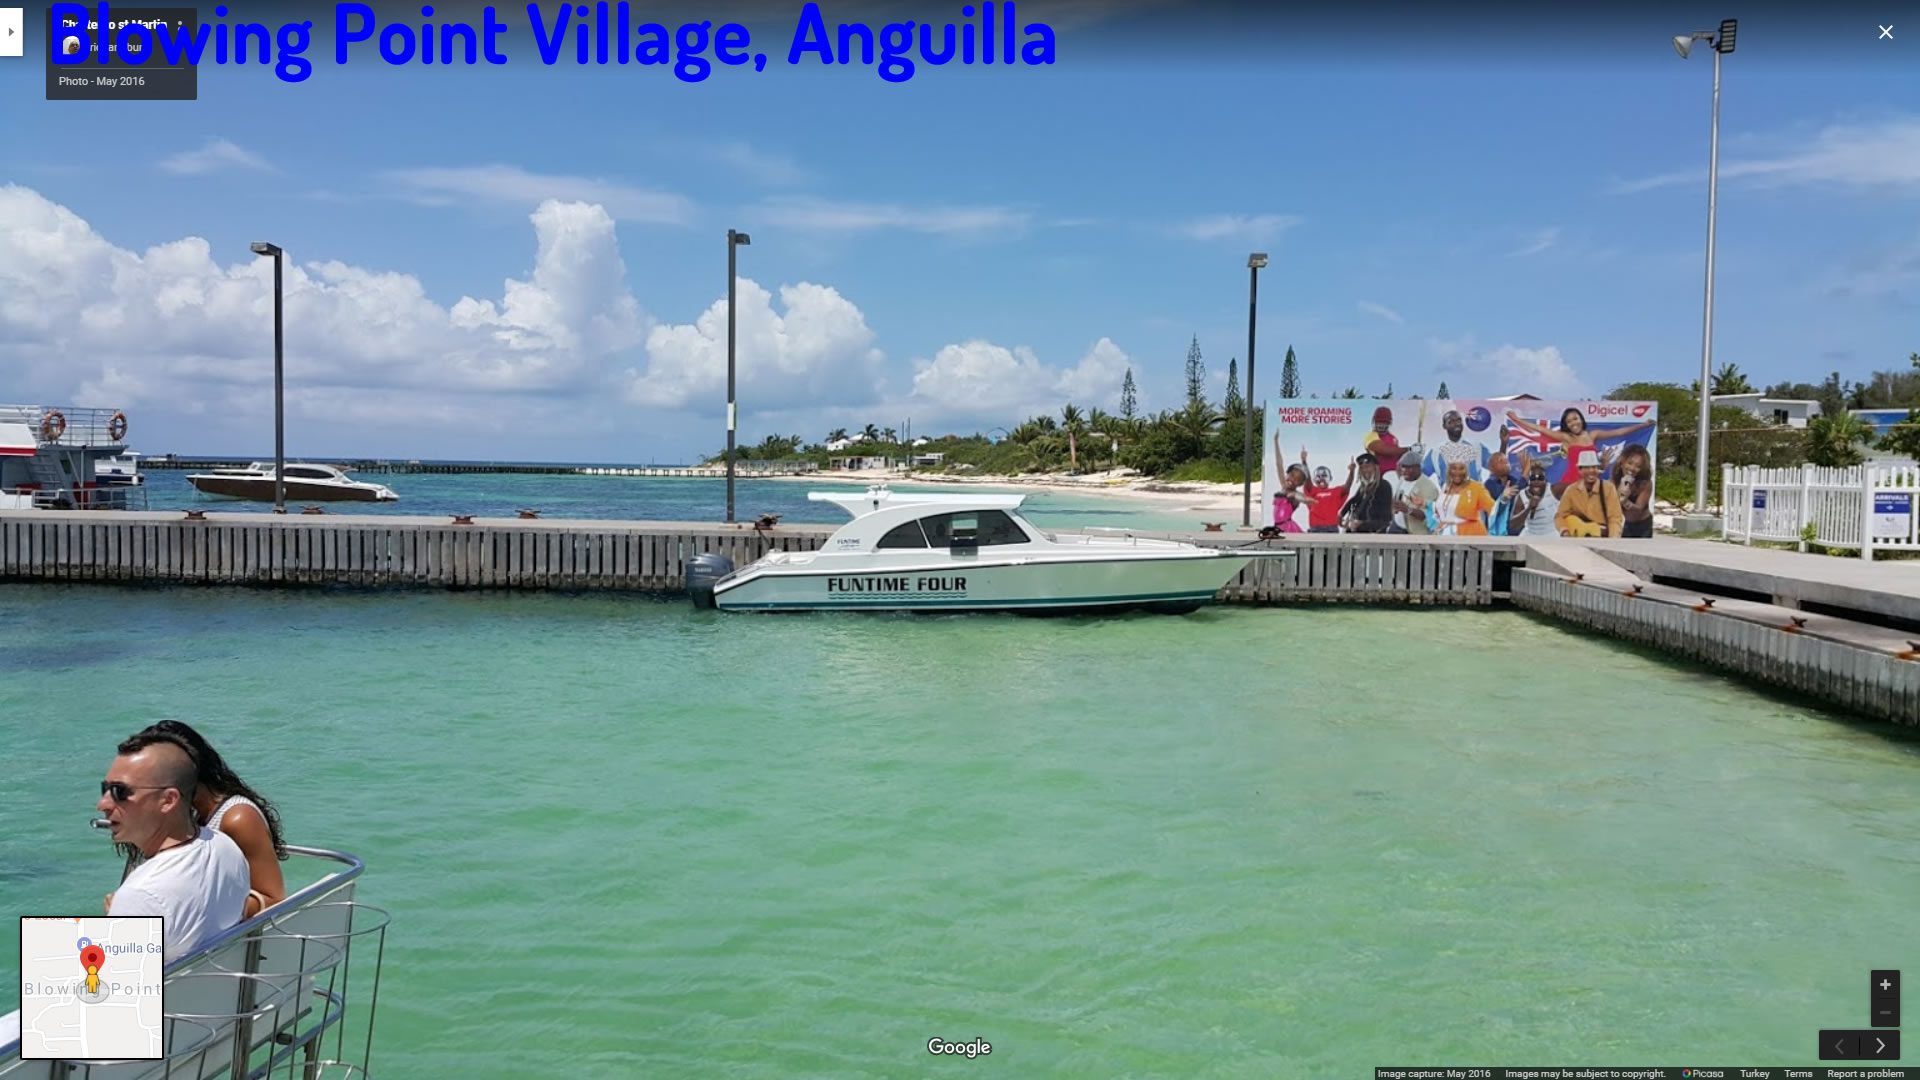 Blowing Point Village Anguilla